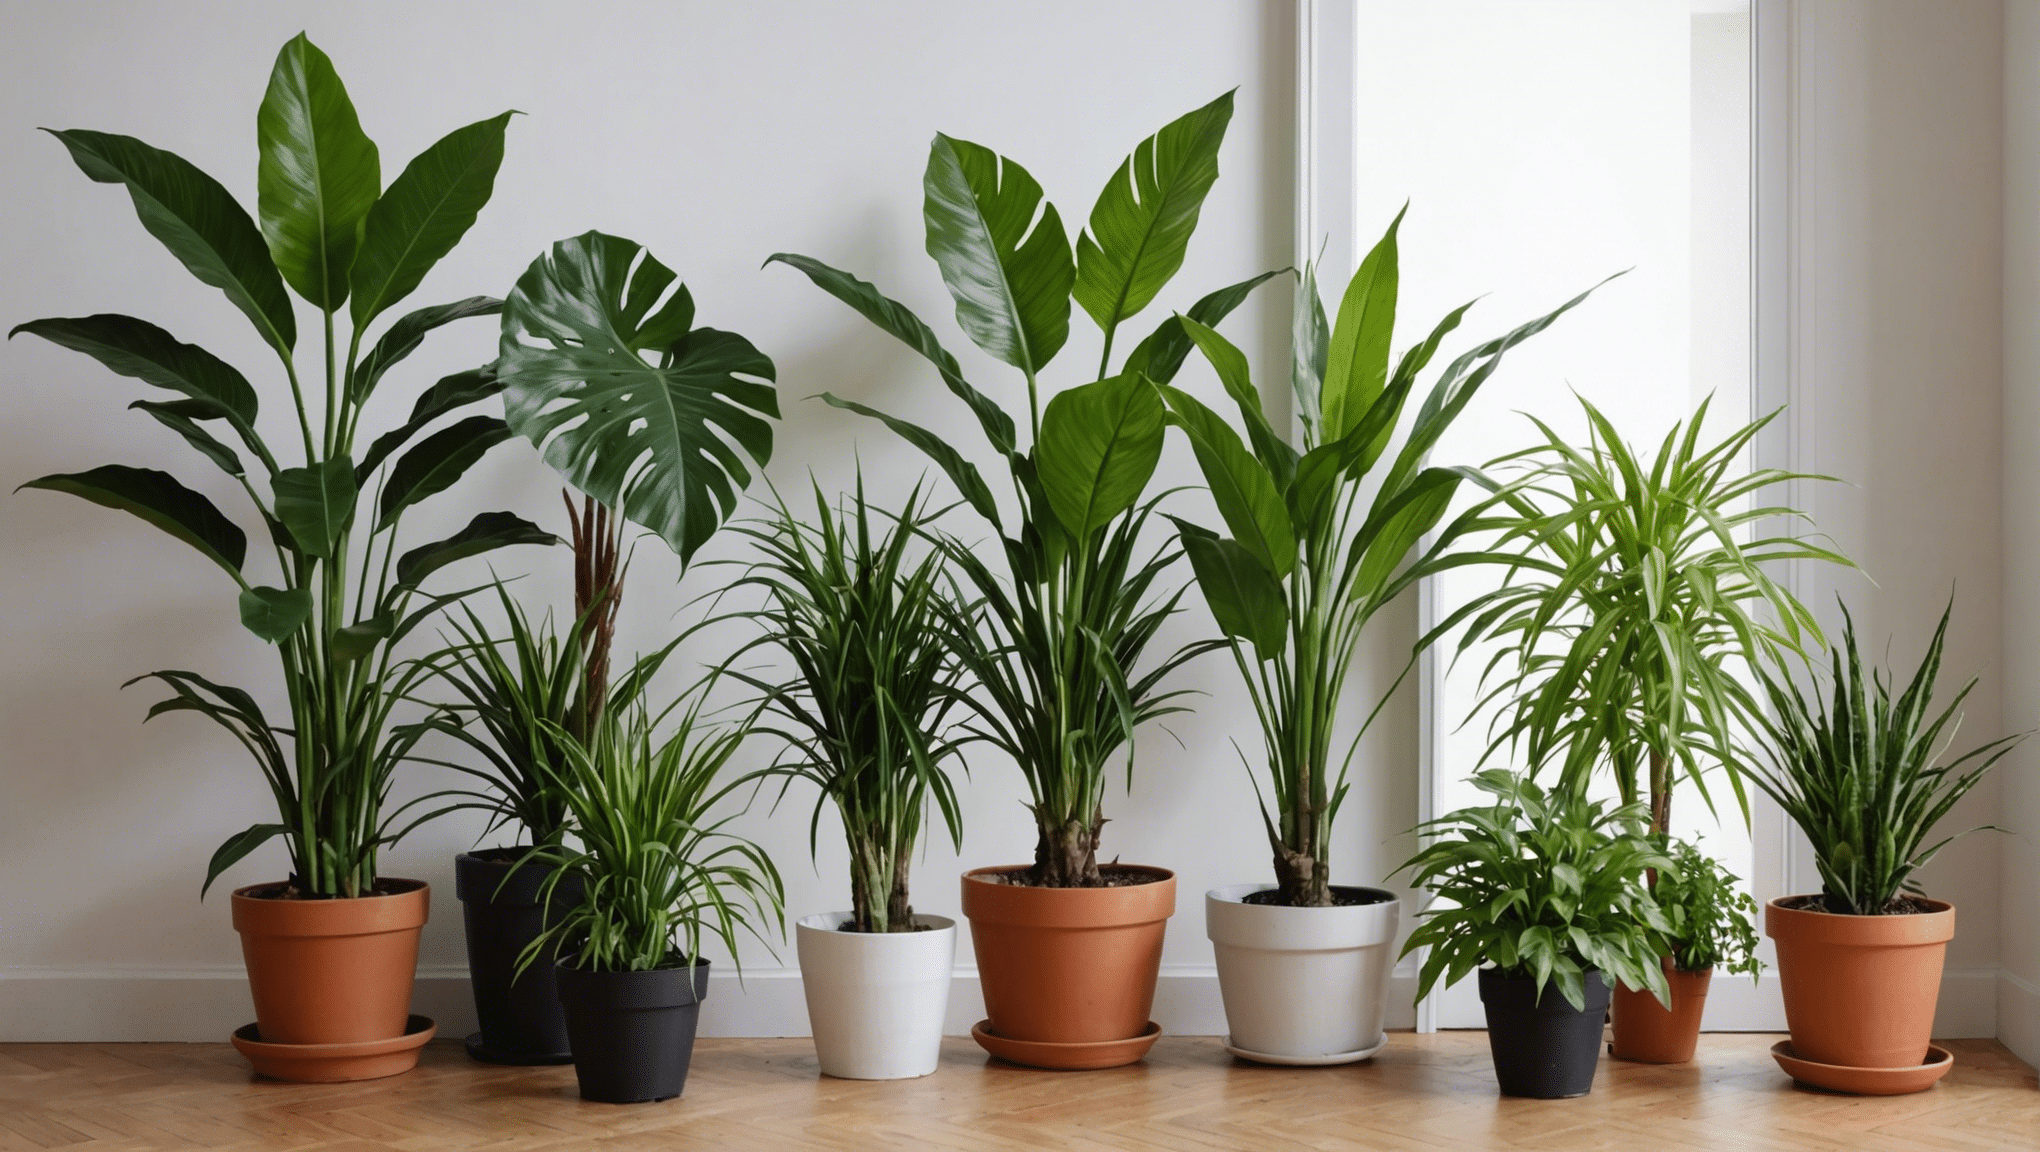 découvrez nos conseils pour entretenir vos plantes d'intérieur et les garder en bonne santé tout au long de l'année.